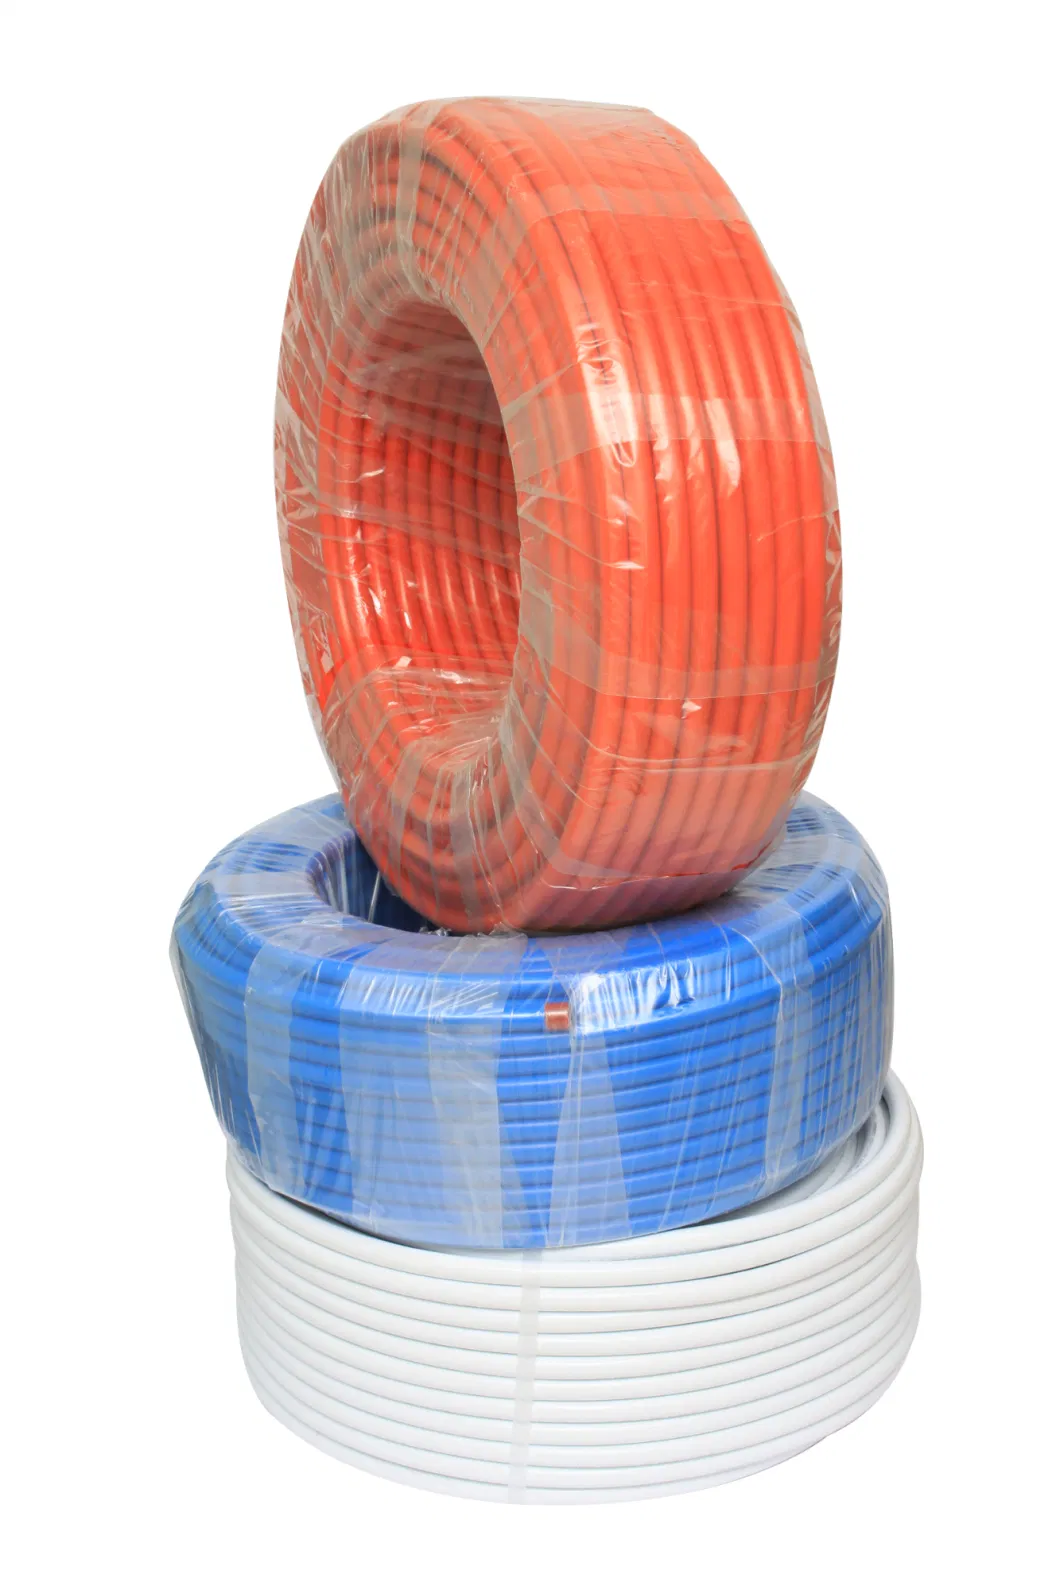 Pex-Al-Pex Plastic Pipe Water Pipe